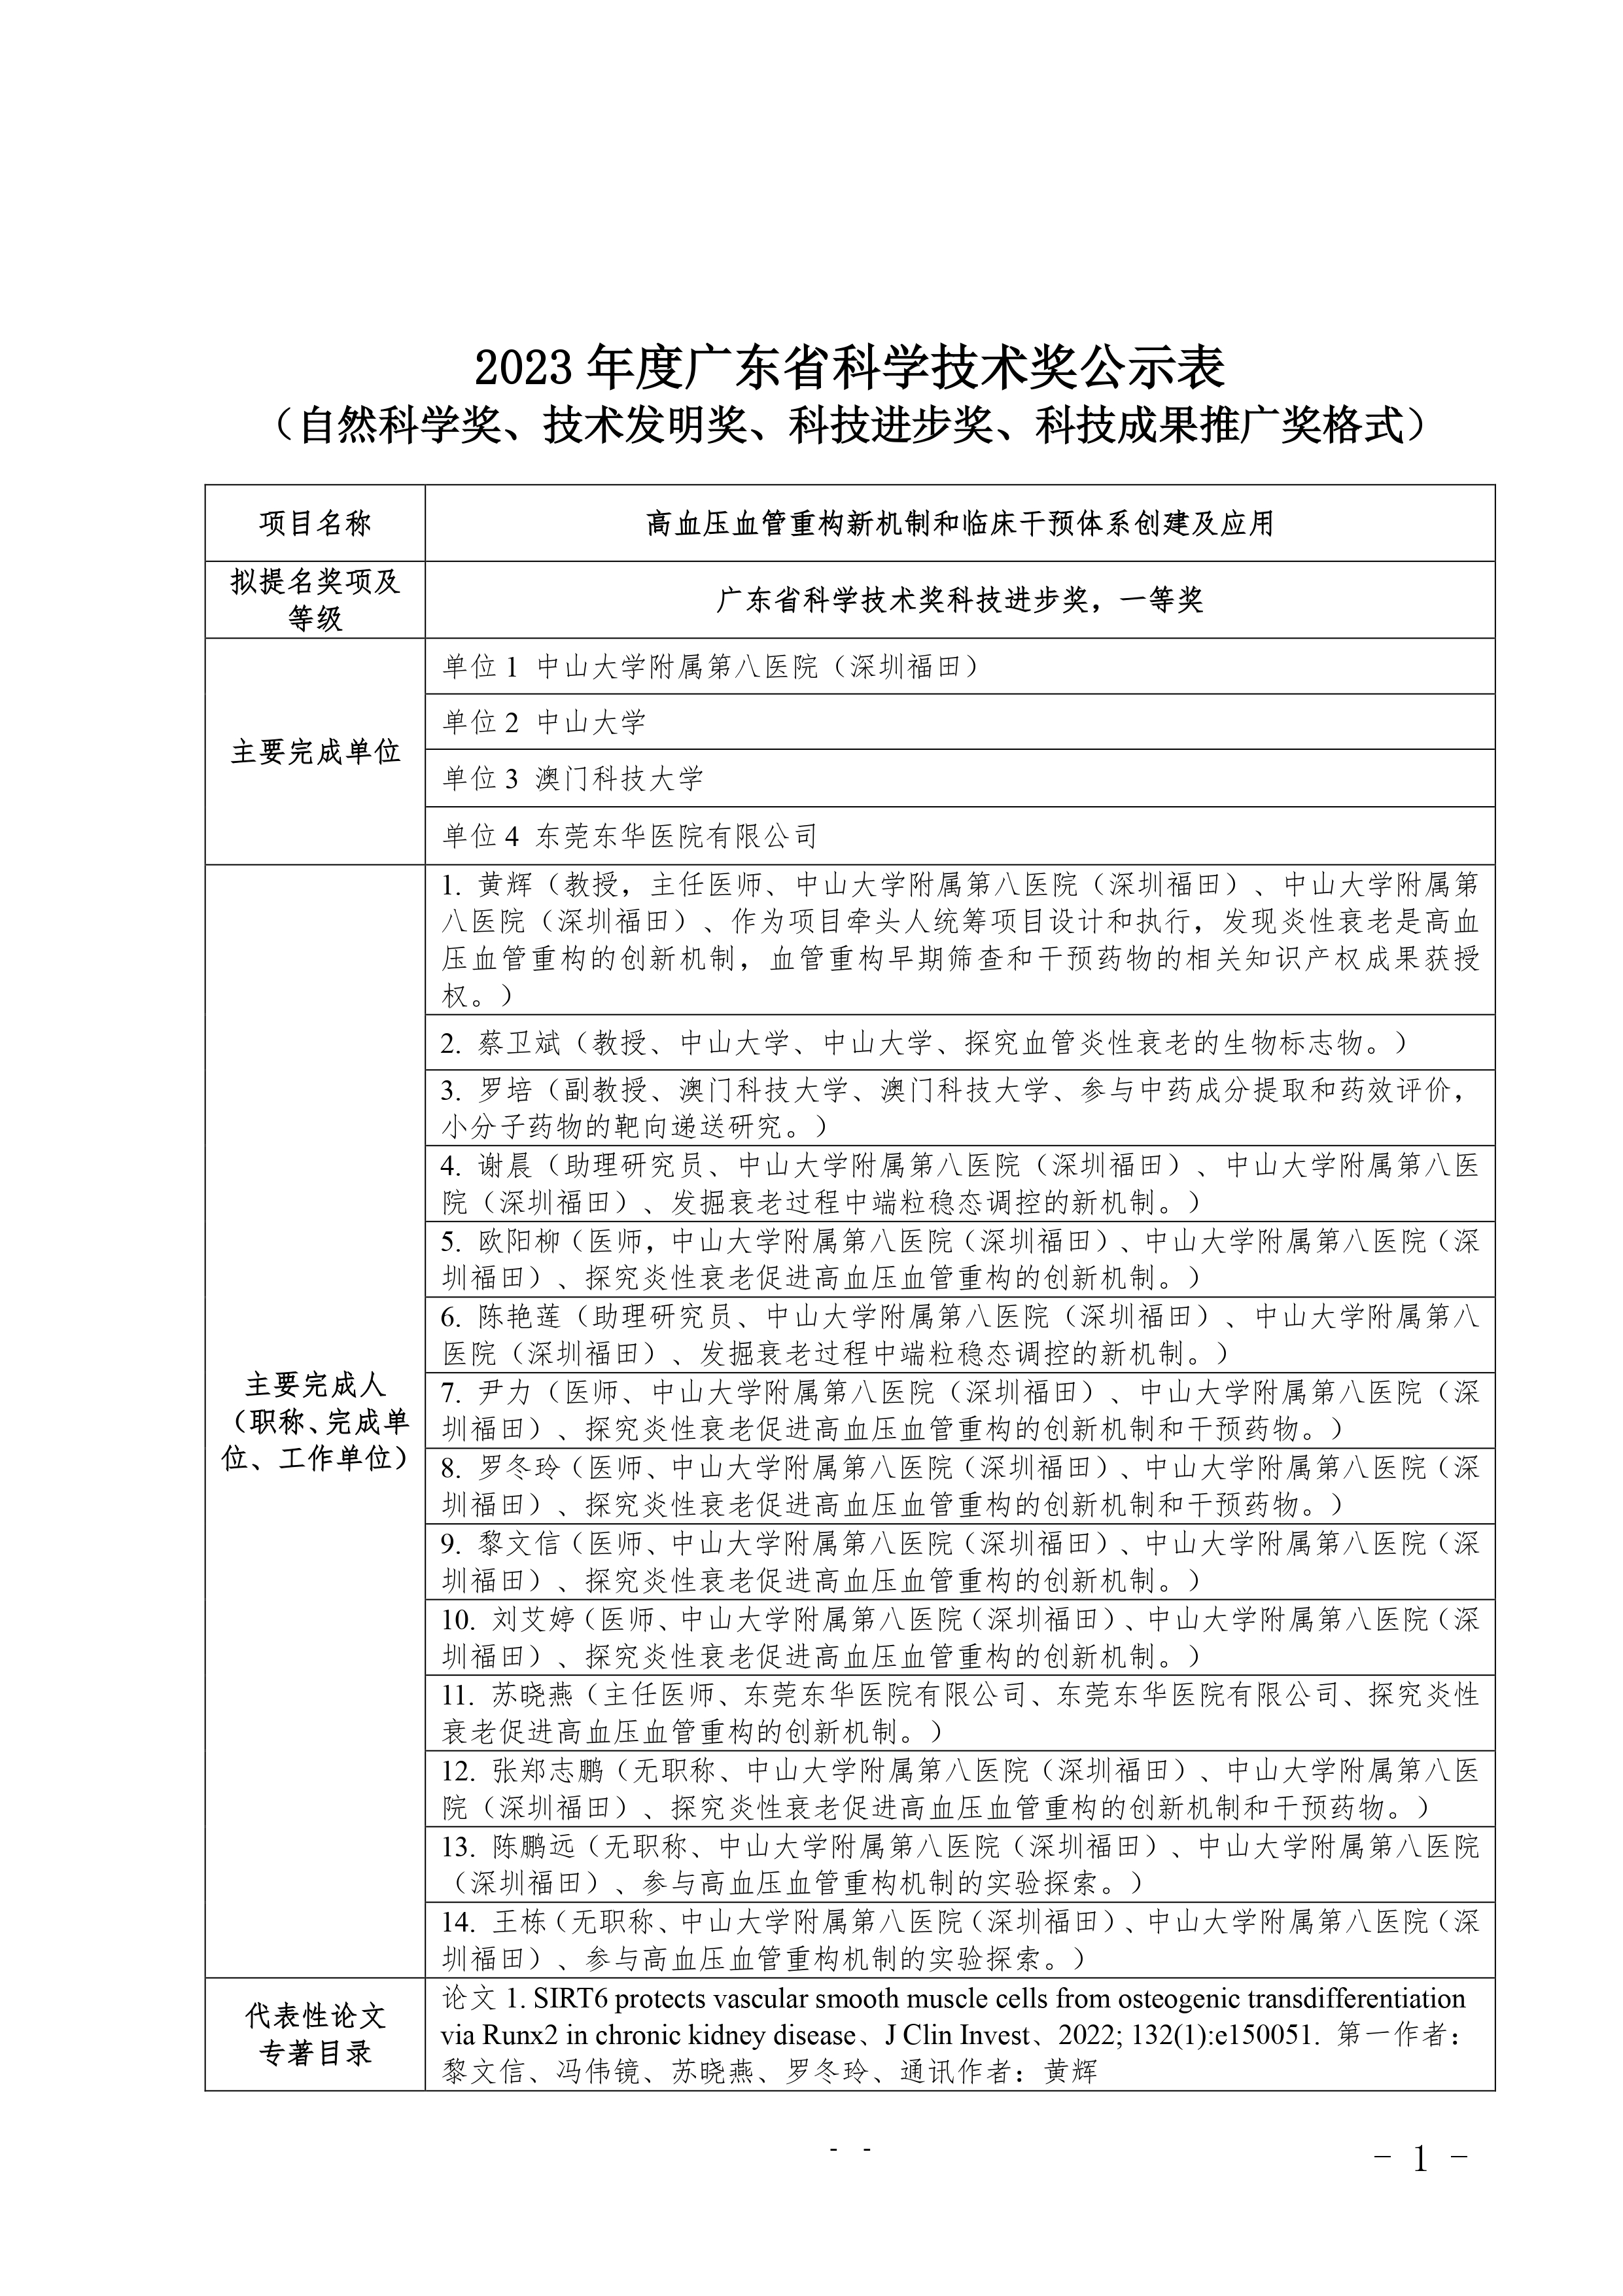 231023 广东省科学技术奖公示表 page 0001